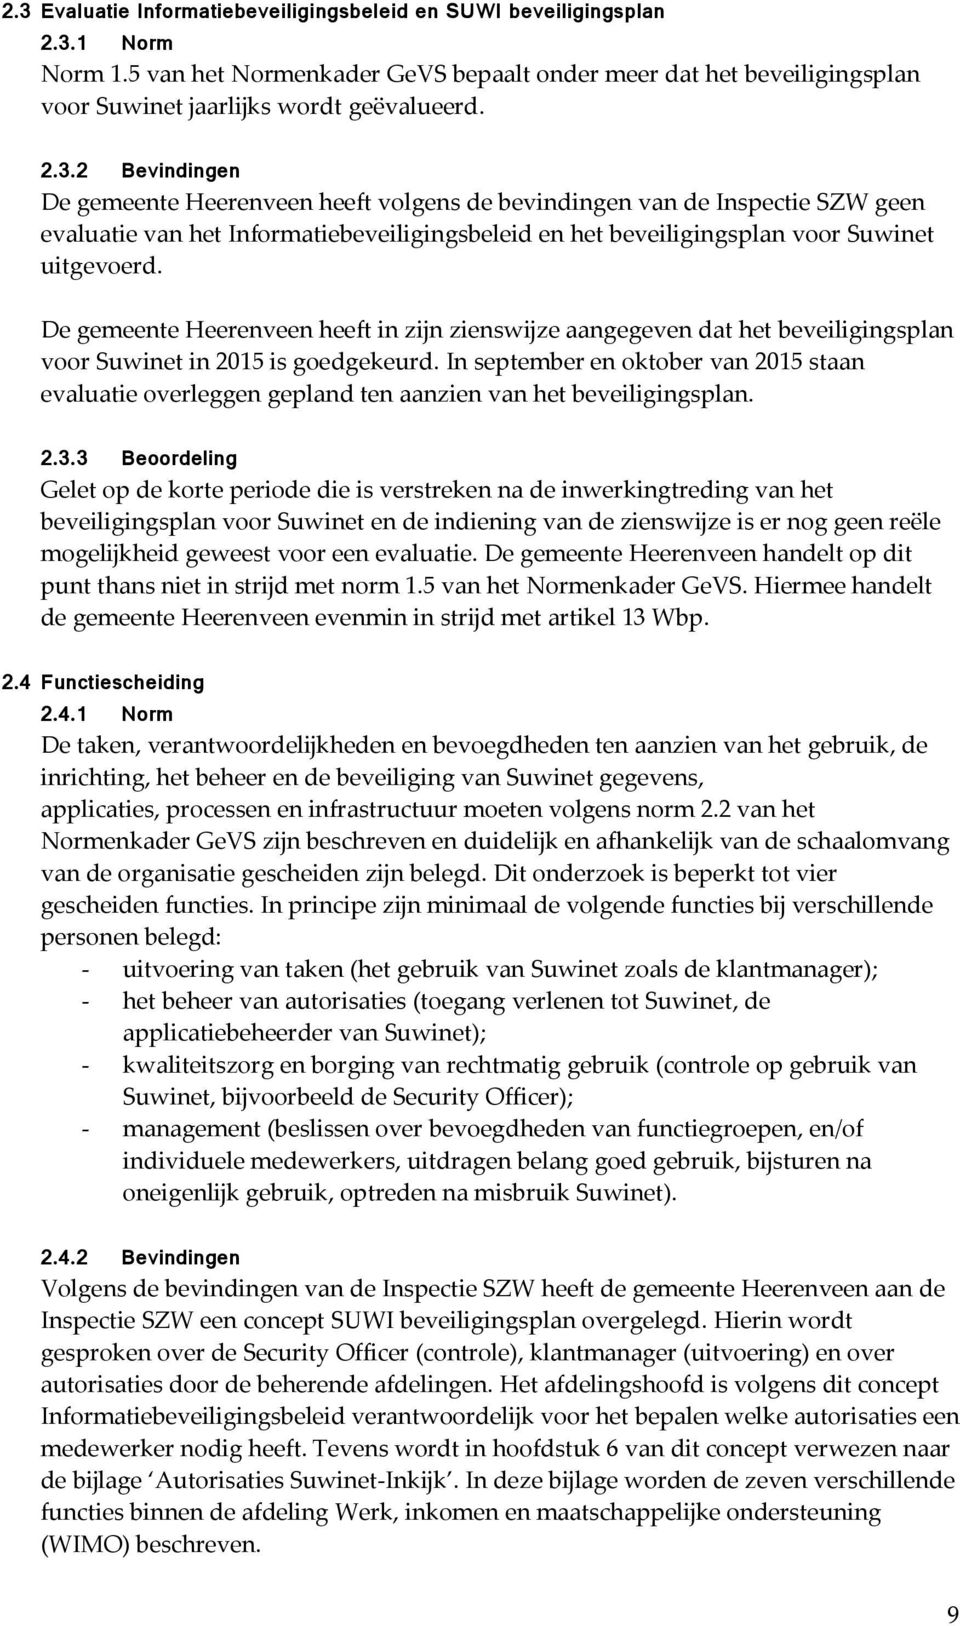 De gemeente Heerenveen heeft in zijn zienswijze aangegeven dat het beveiligingsplan voor Suwinet in 2015 is goedgekeurd.